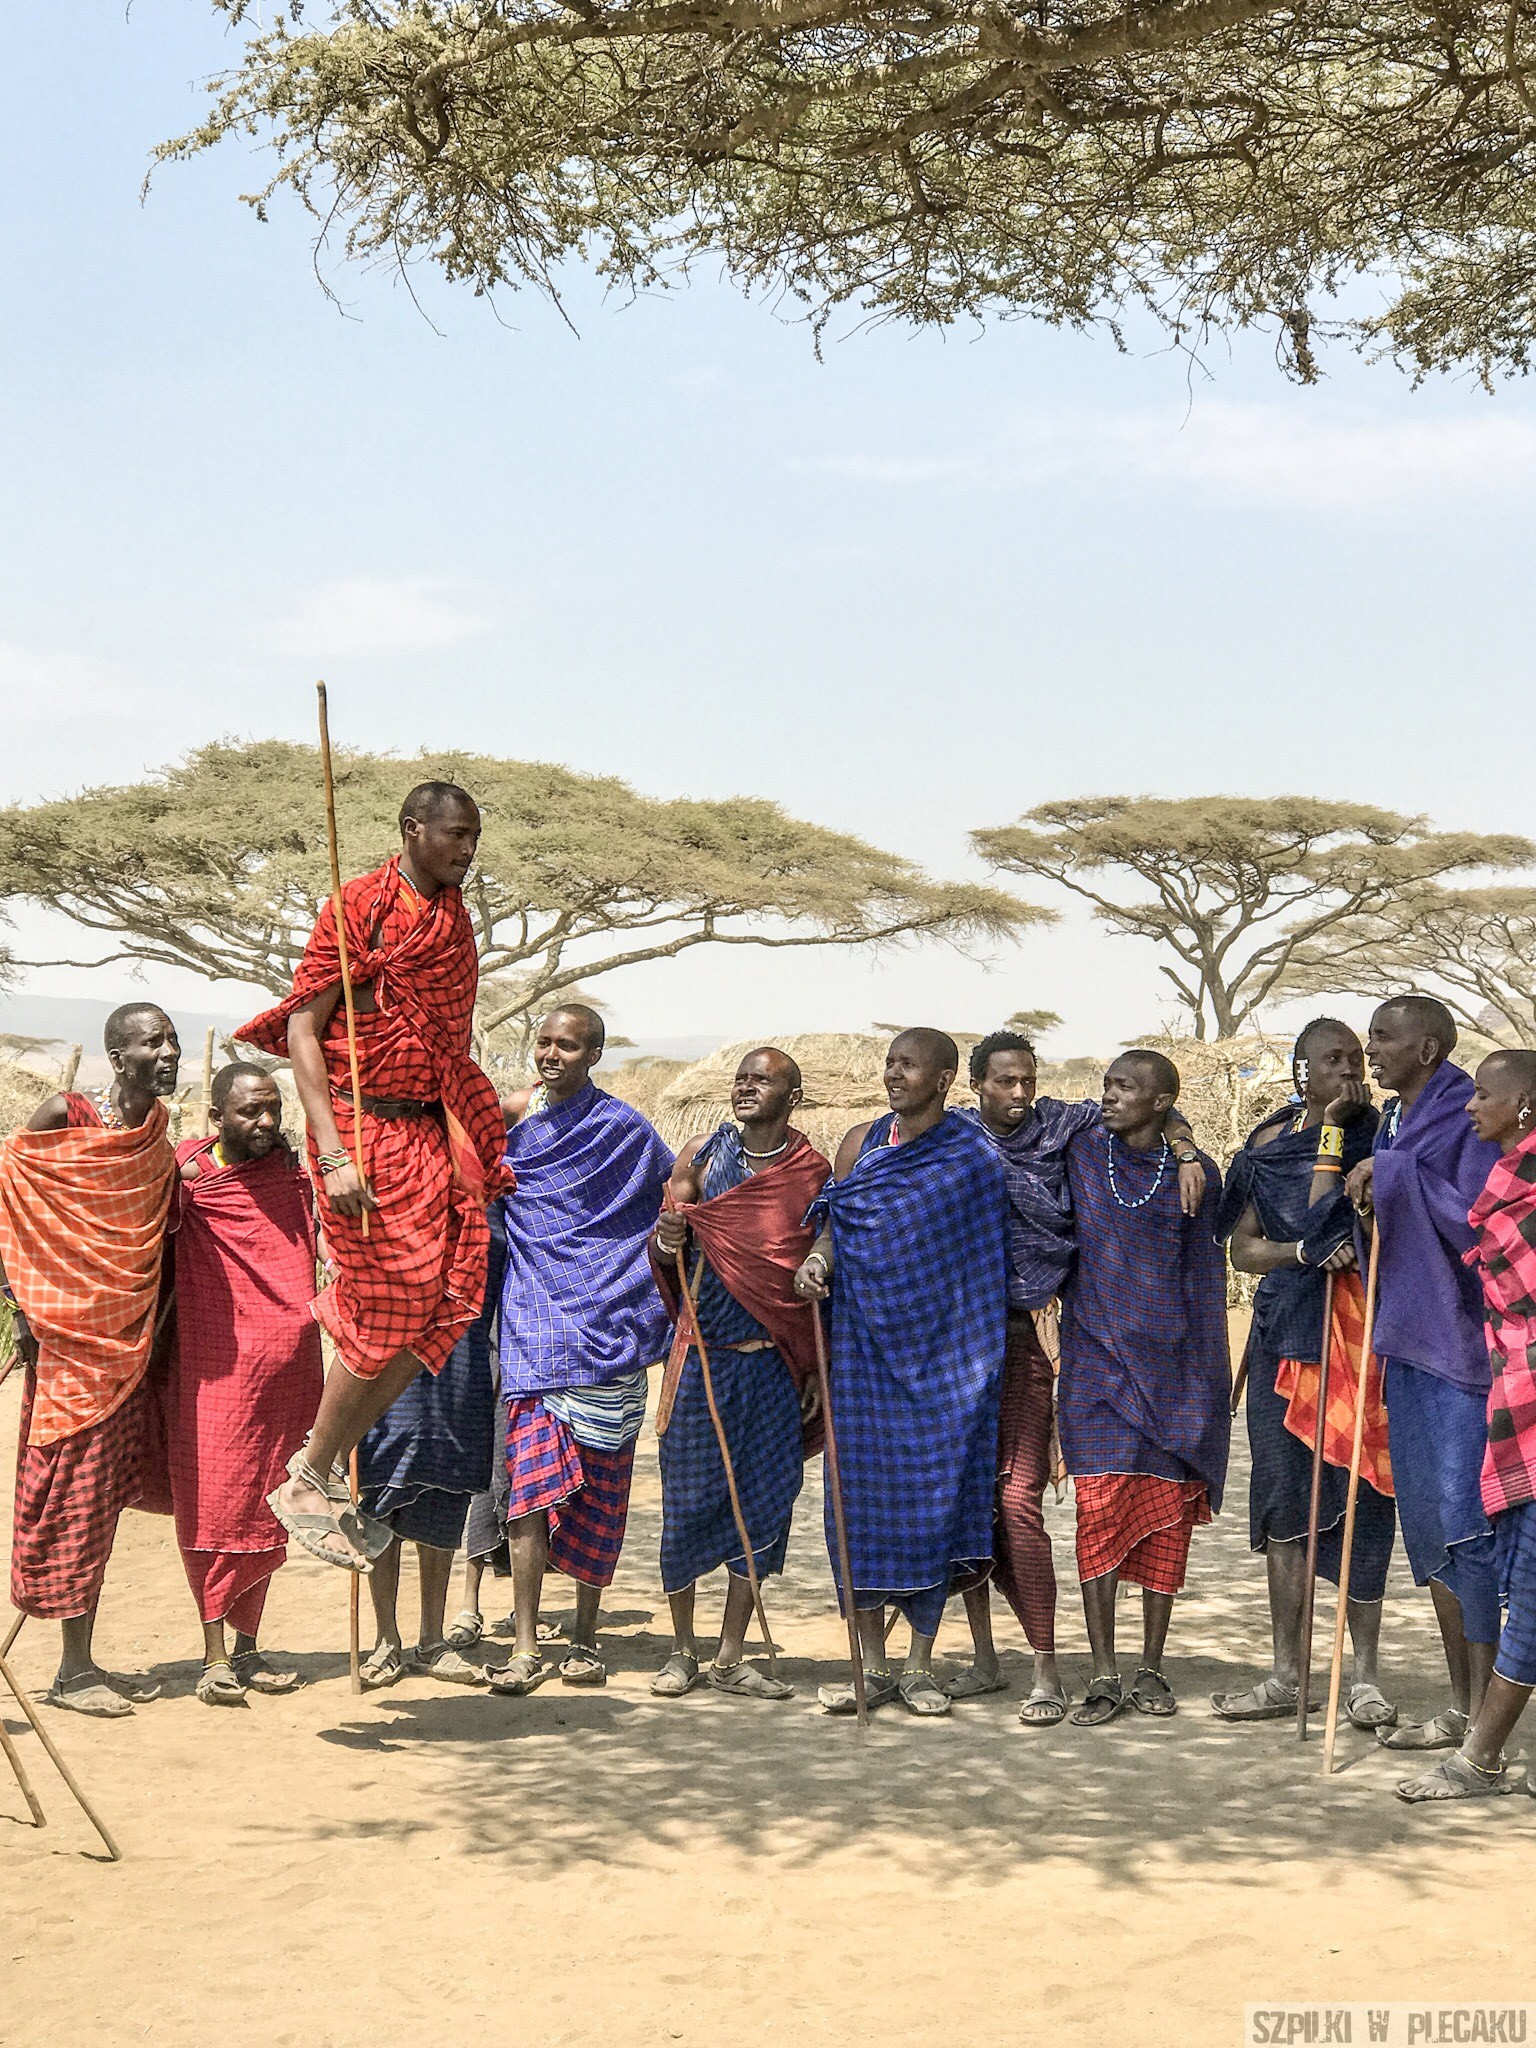 Masajowie – wojowniczy lud Afryki